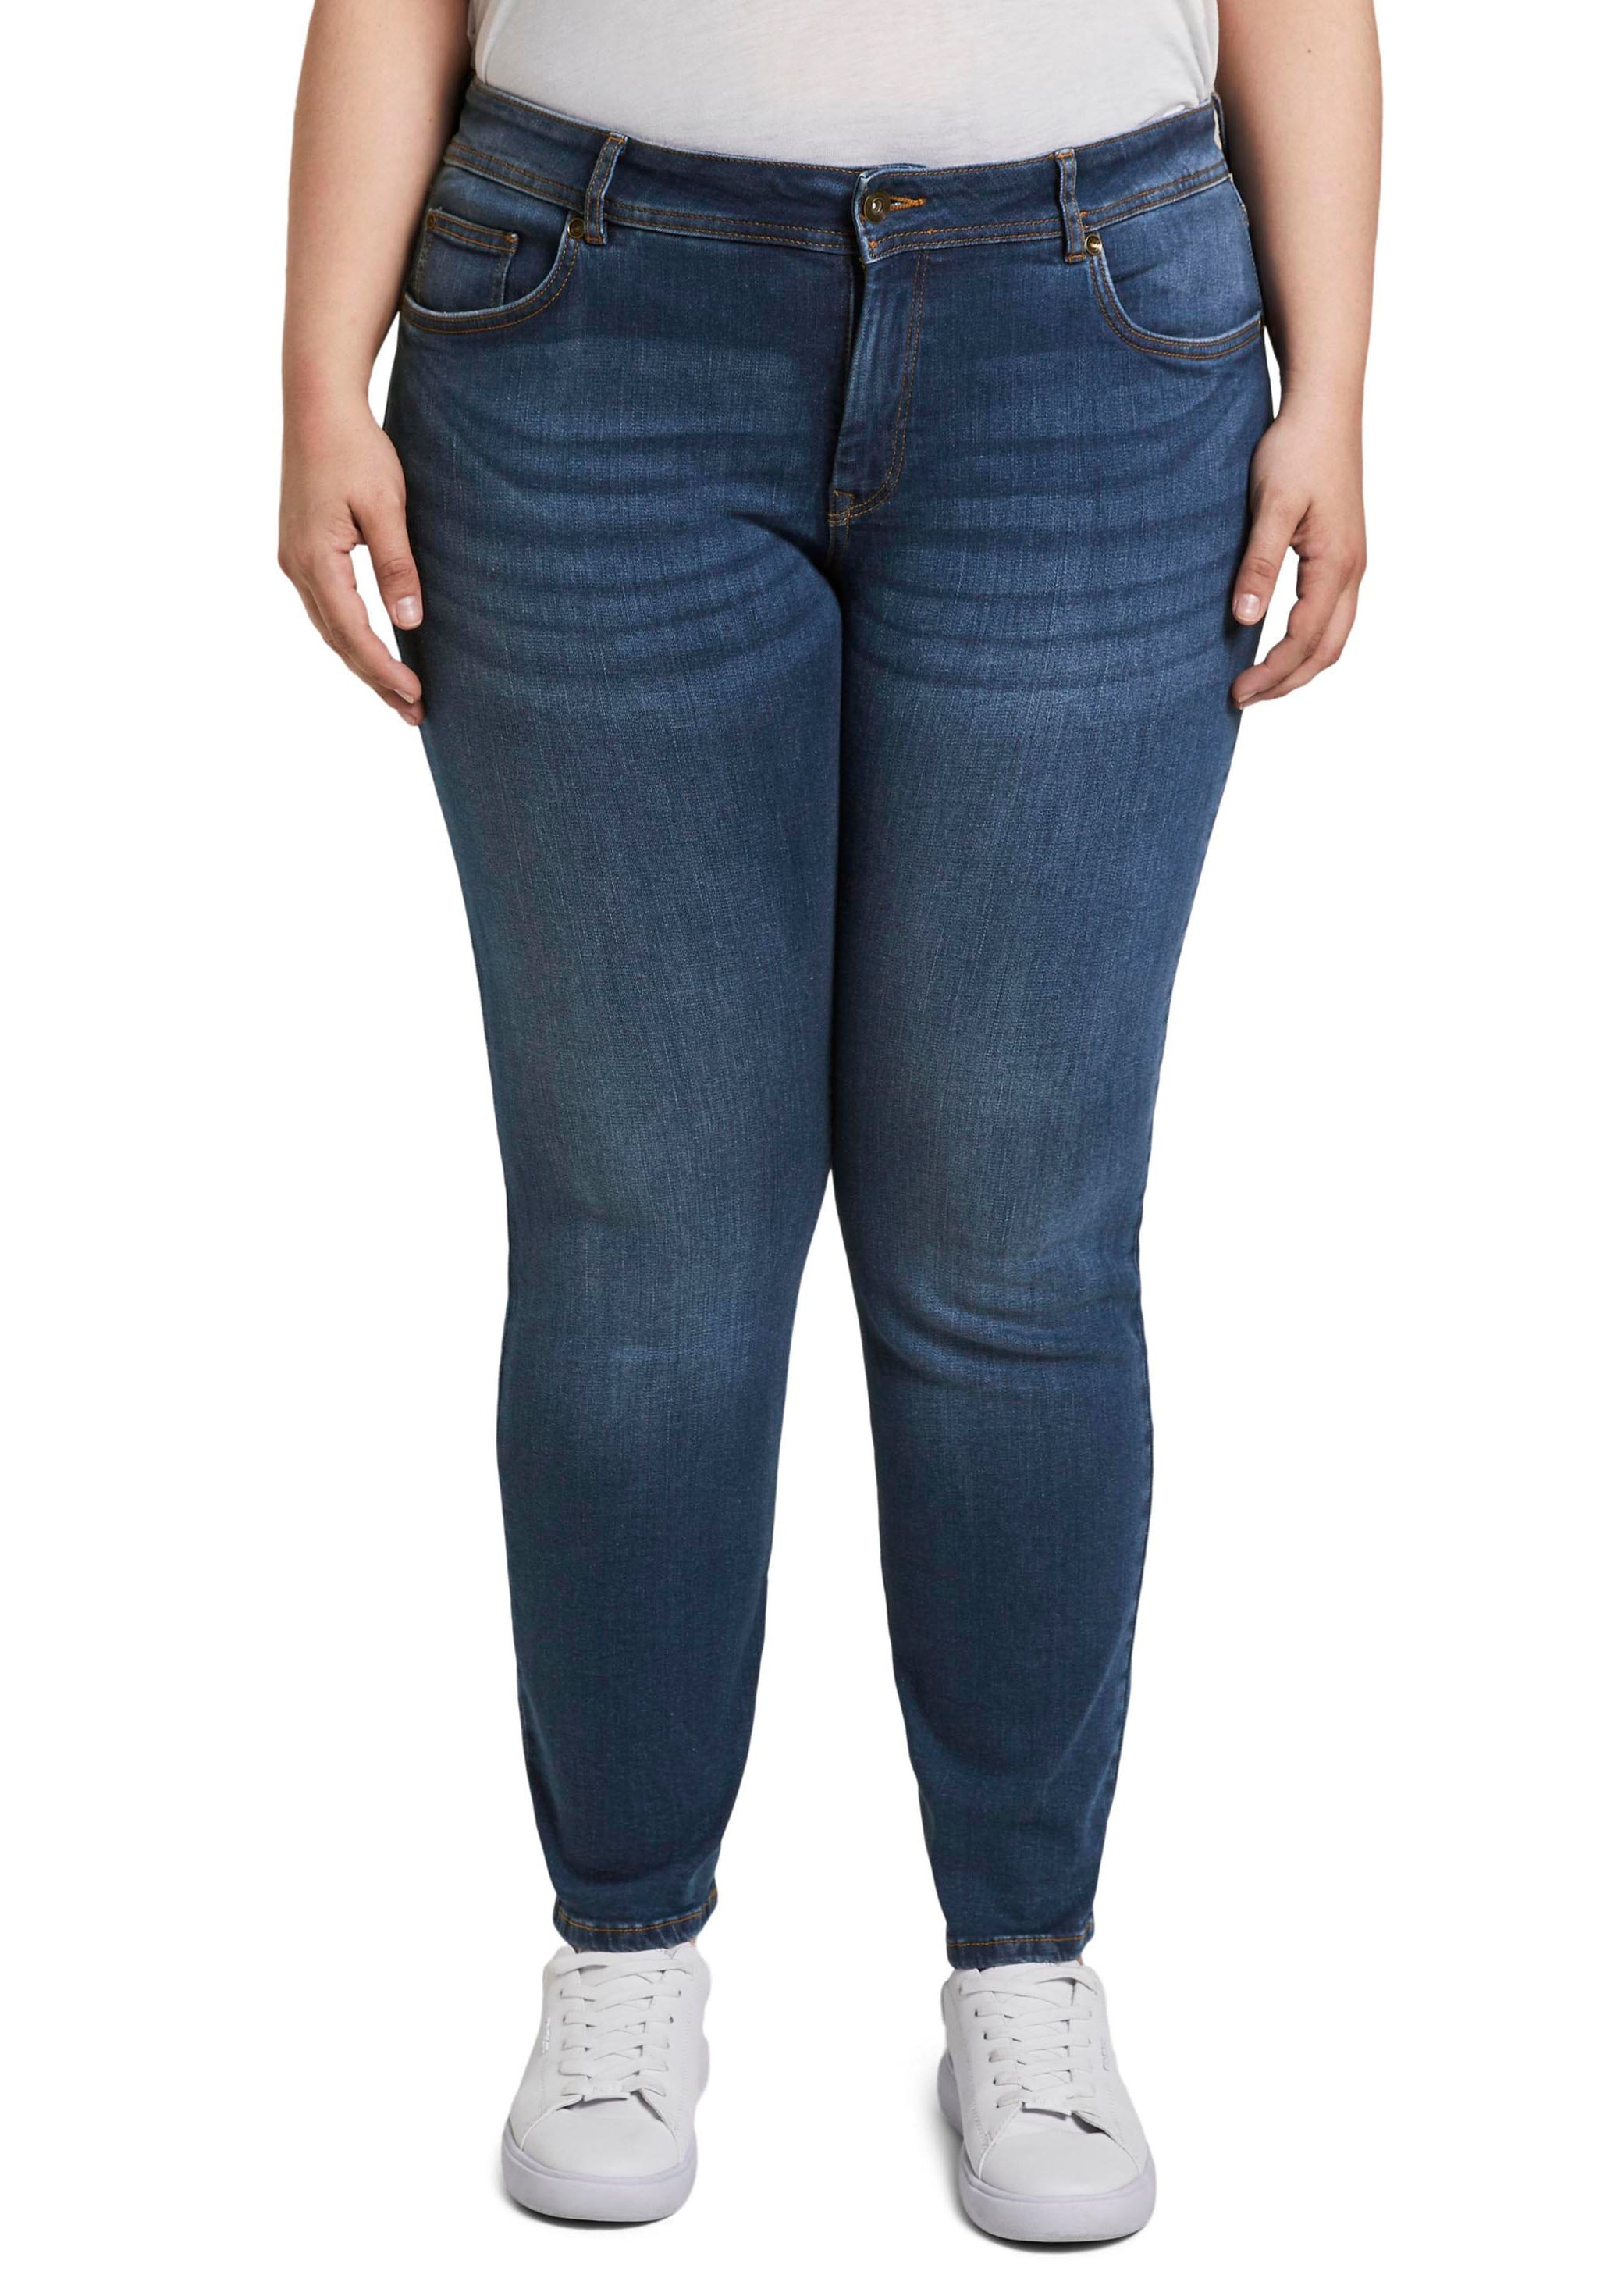 Jeans skinny - Acheterles tendances actuelles chez Ackermann.ch en ligne